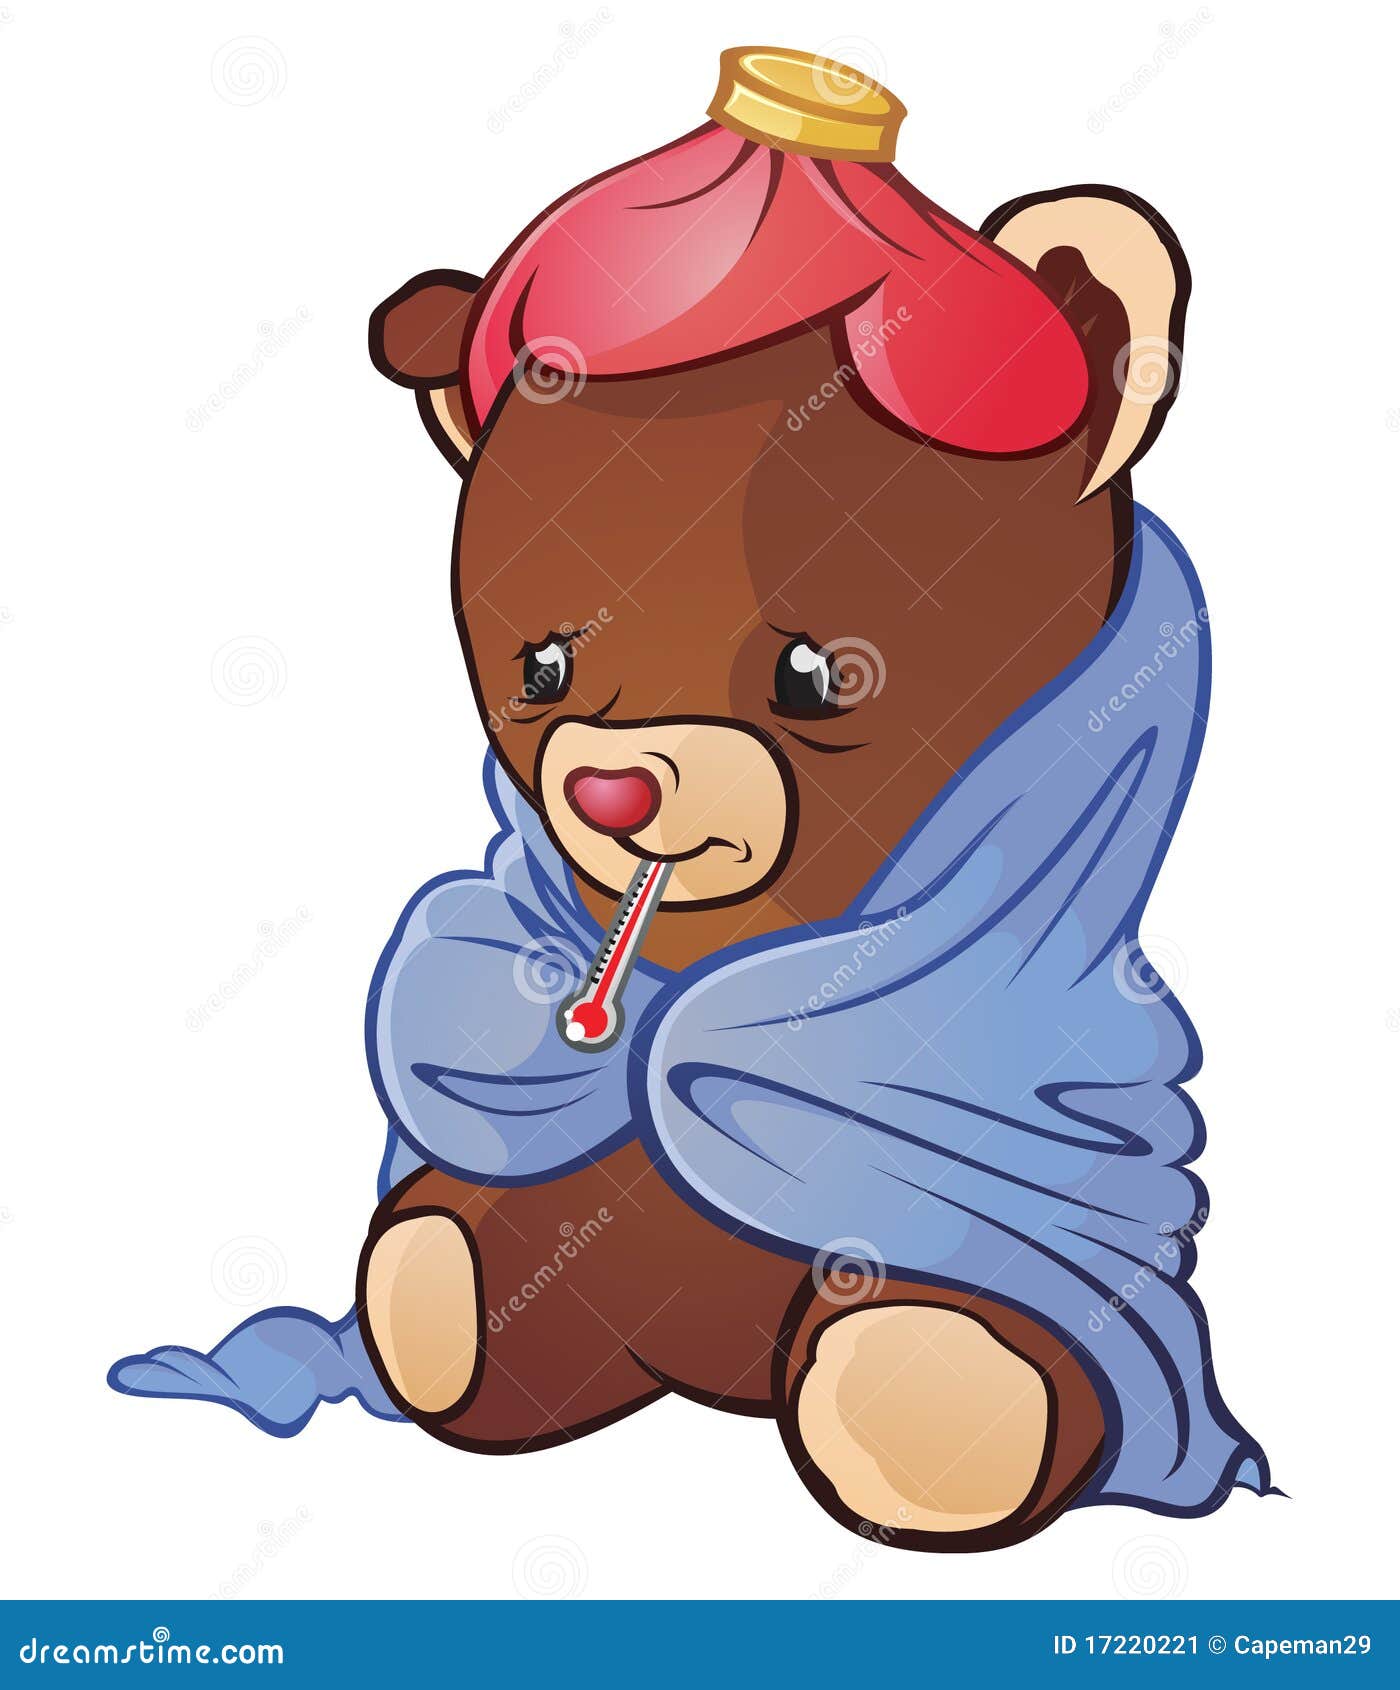 игрушечный больноя медведя. случай внимания уловил холодного доктора помощи гриппа ощупывания возможно нужно не довольно специальный игрушечный задействовать уродское добро а